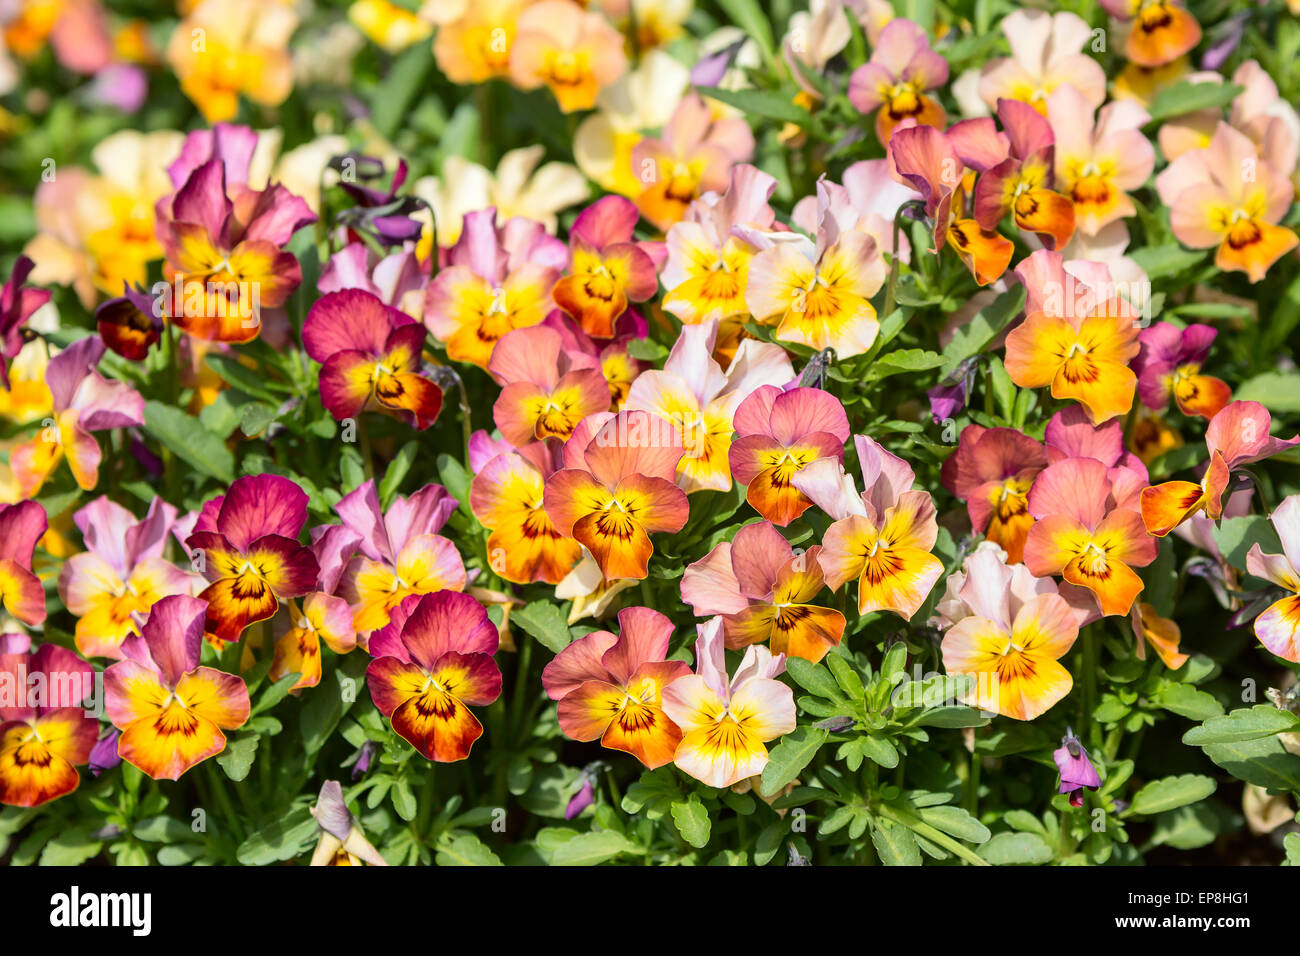 Garden pancy (Viola tricolore var. hortensis) qui si vede in un letto di fiori. Queste sono calde tonalità del giallo, arancione e rosso e stretto insieme Foto Stock